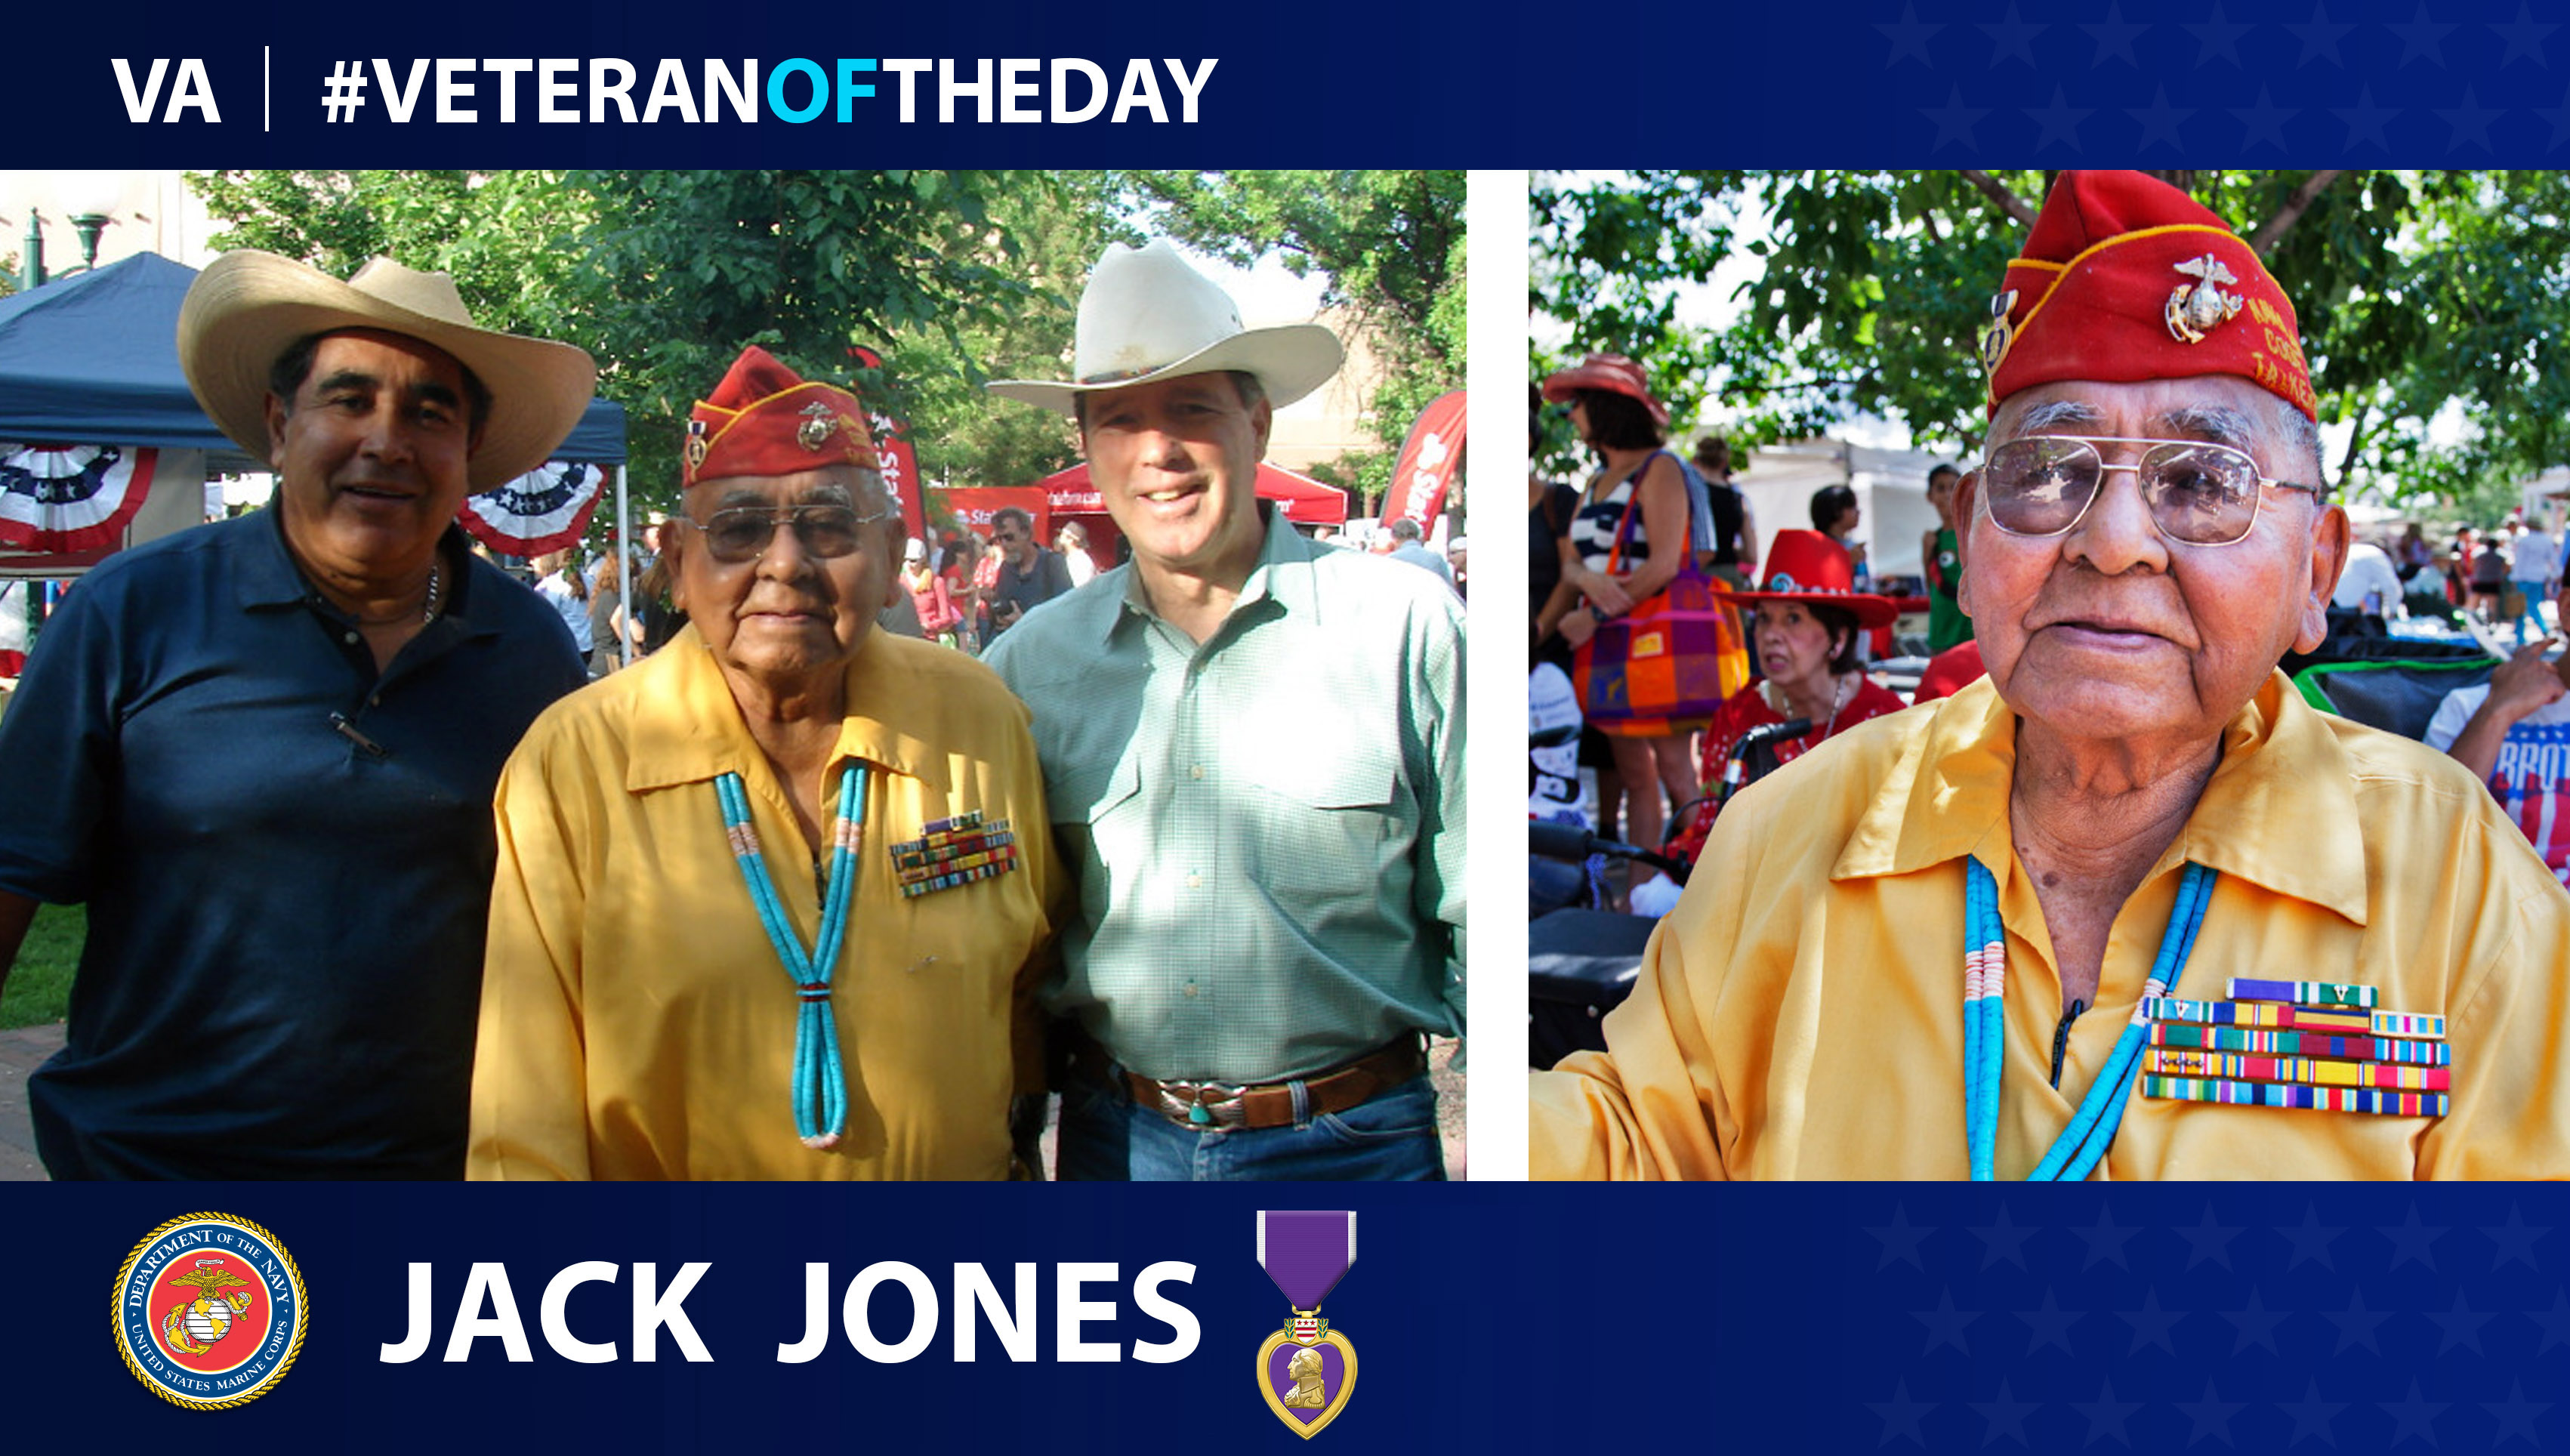 Jack Jones is today's Veteran of the Day.